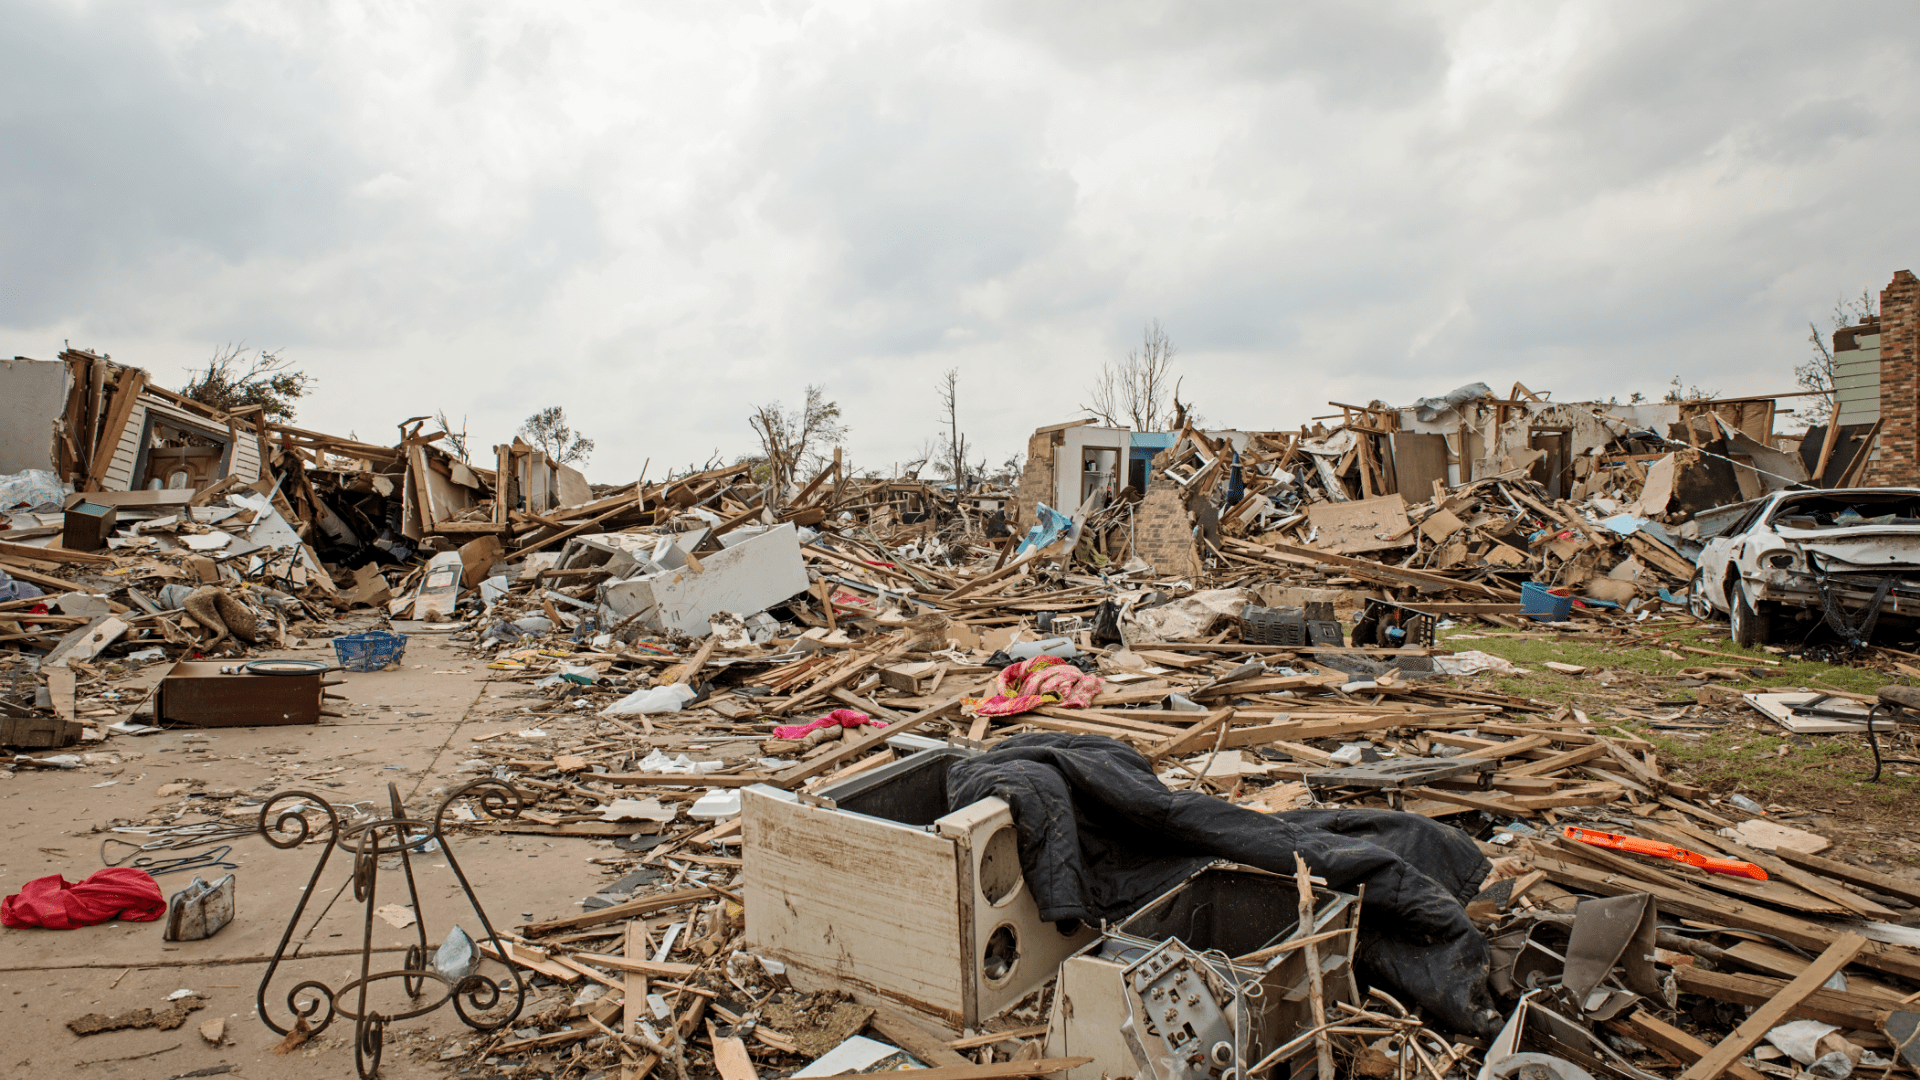 Aftermath of Tornado in Neighborhood with Debris